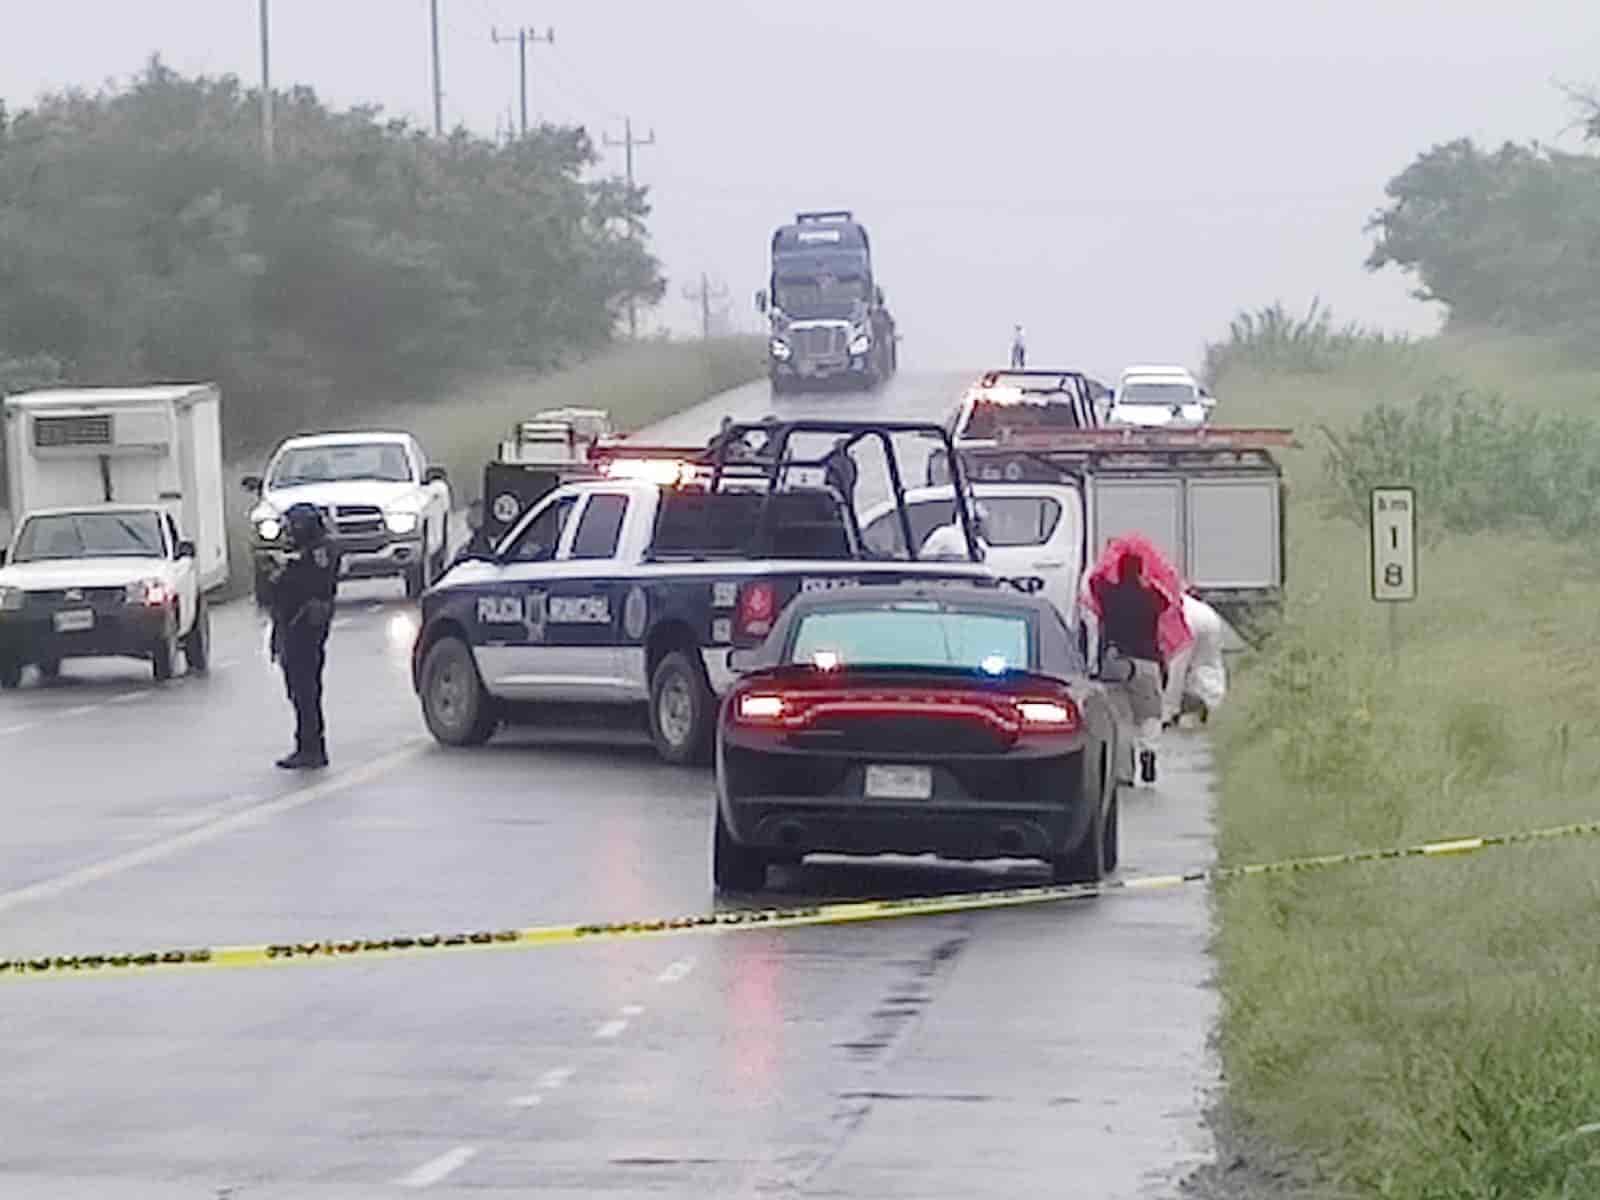 El cadáver de un hombre maniatado, amarrado de manos y pies, fue encontrado ayer en la Carretera Cadereyta-Allende, en el kilómetro 18, municipio de Cadereyta Jiménez